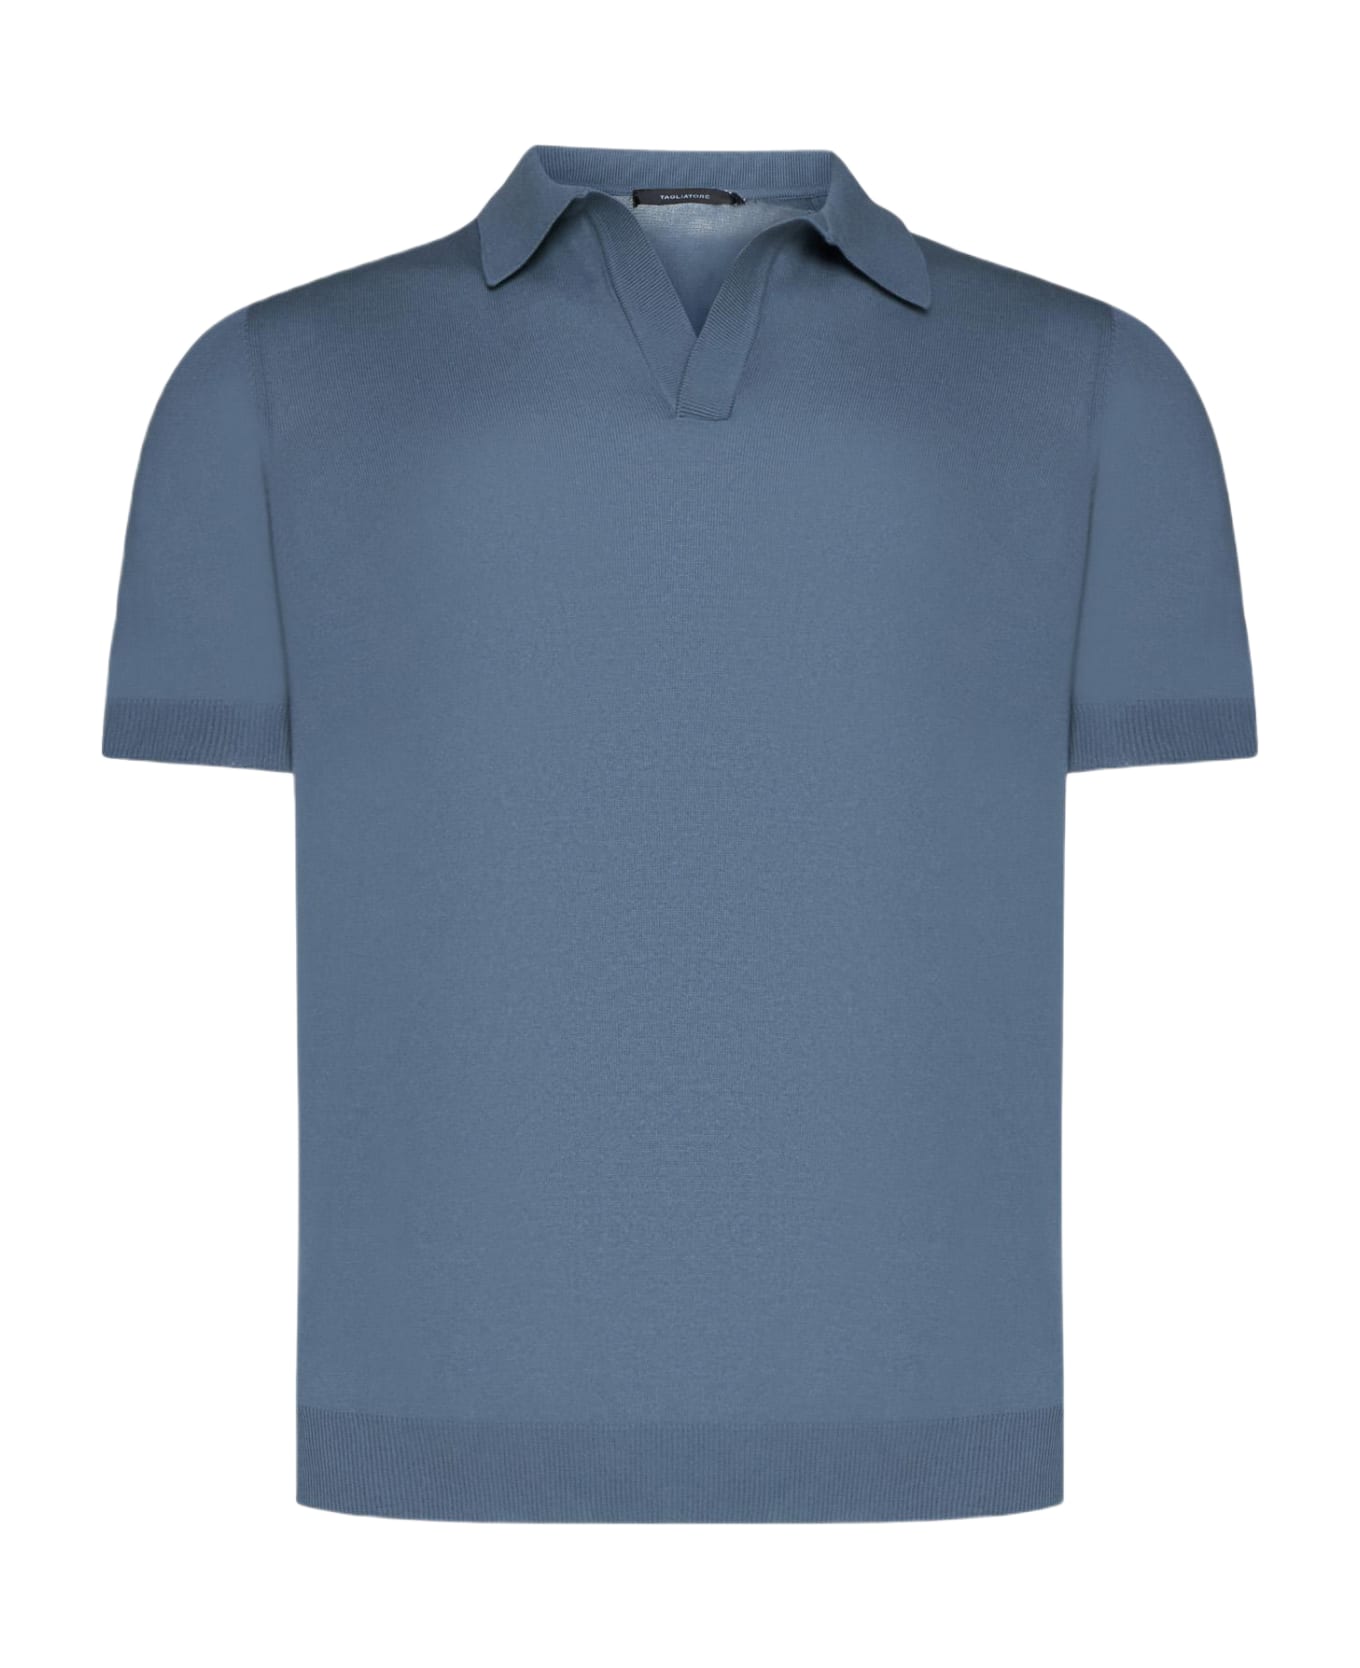 Tagliatore Cotton Polo Shirt - BROWN LEOPARD GREY